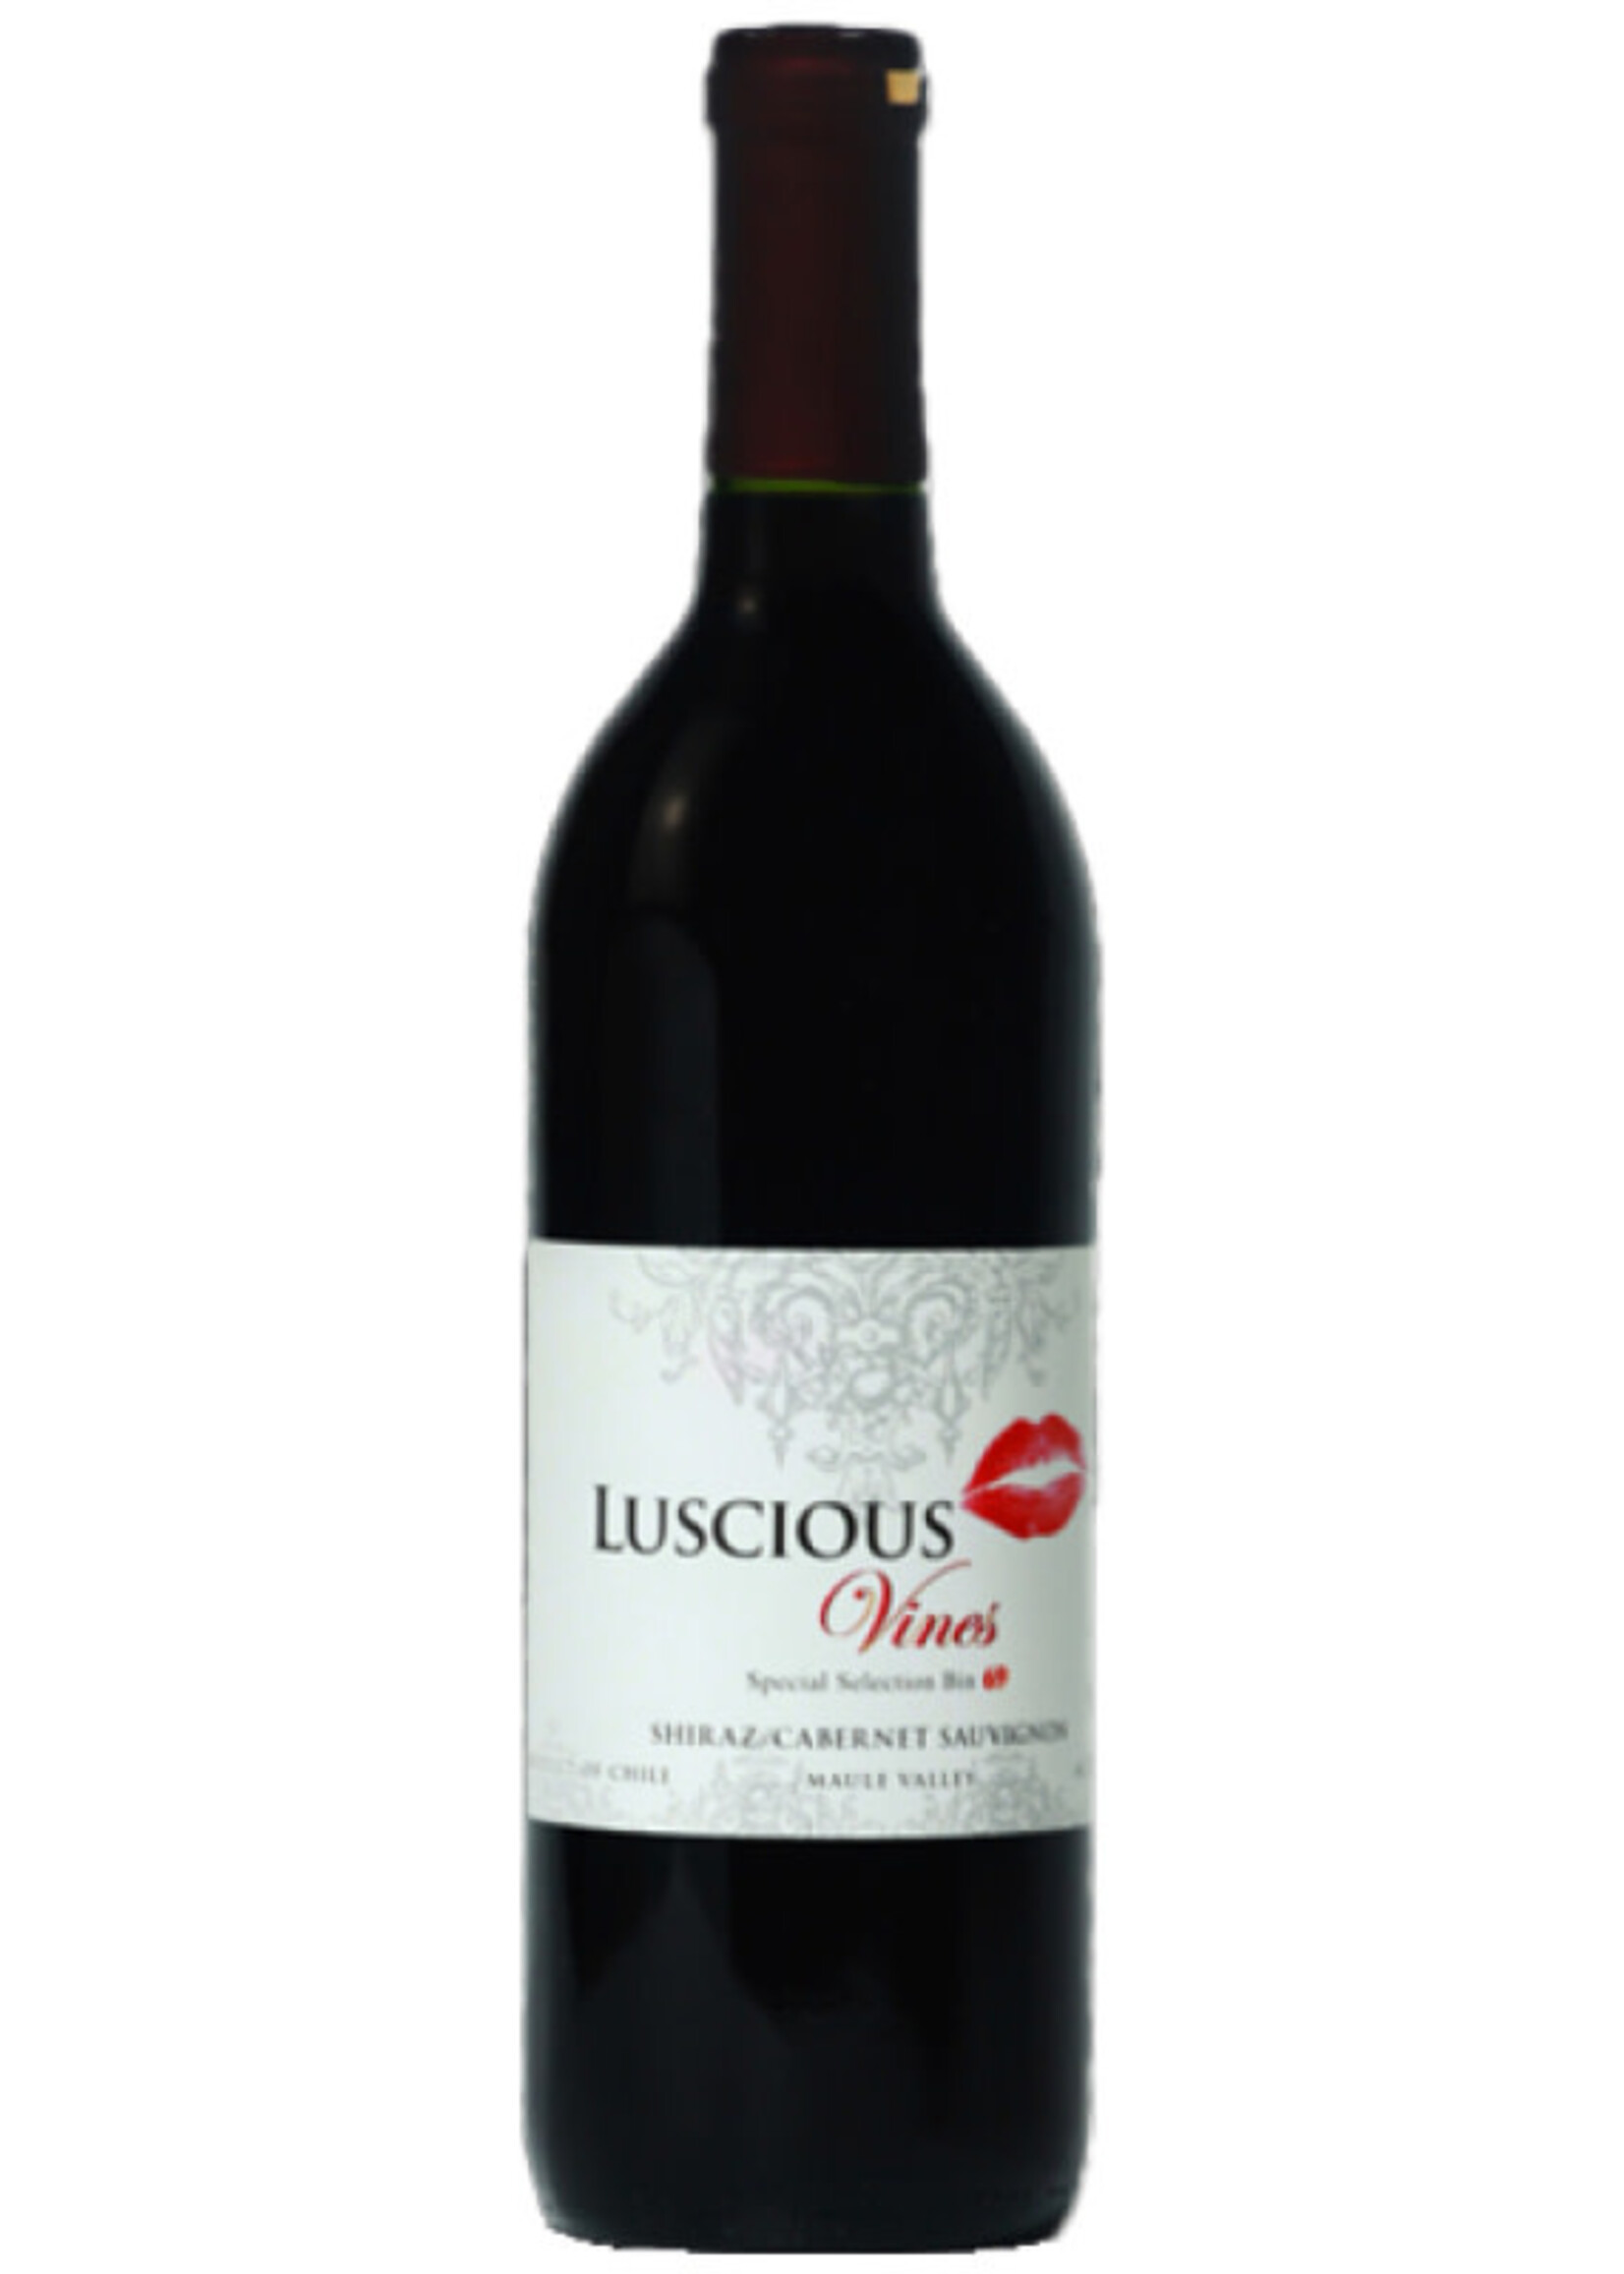 Wine Luscious shiraz cab sauvignon  750ml